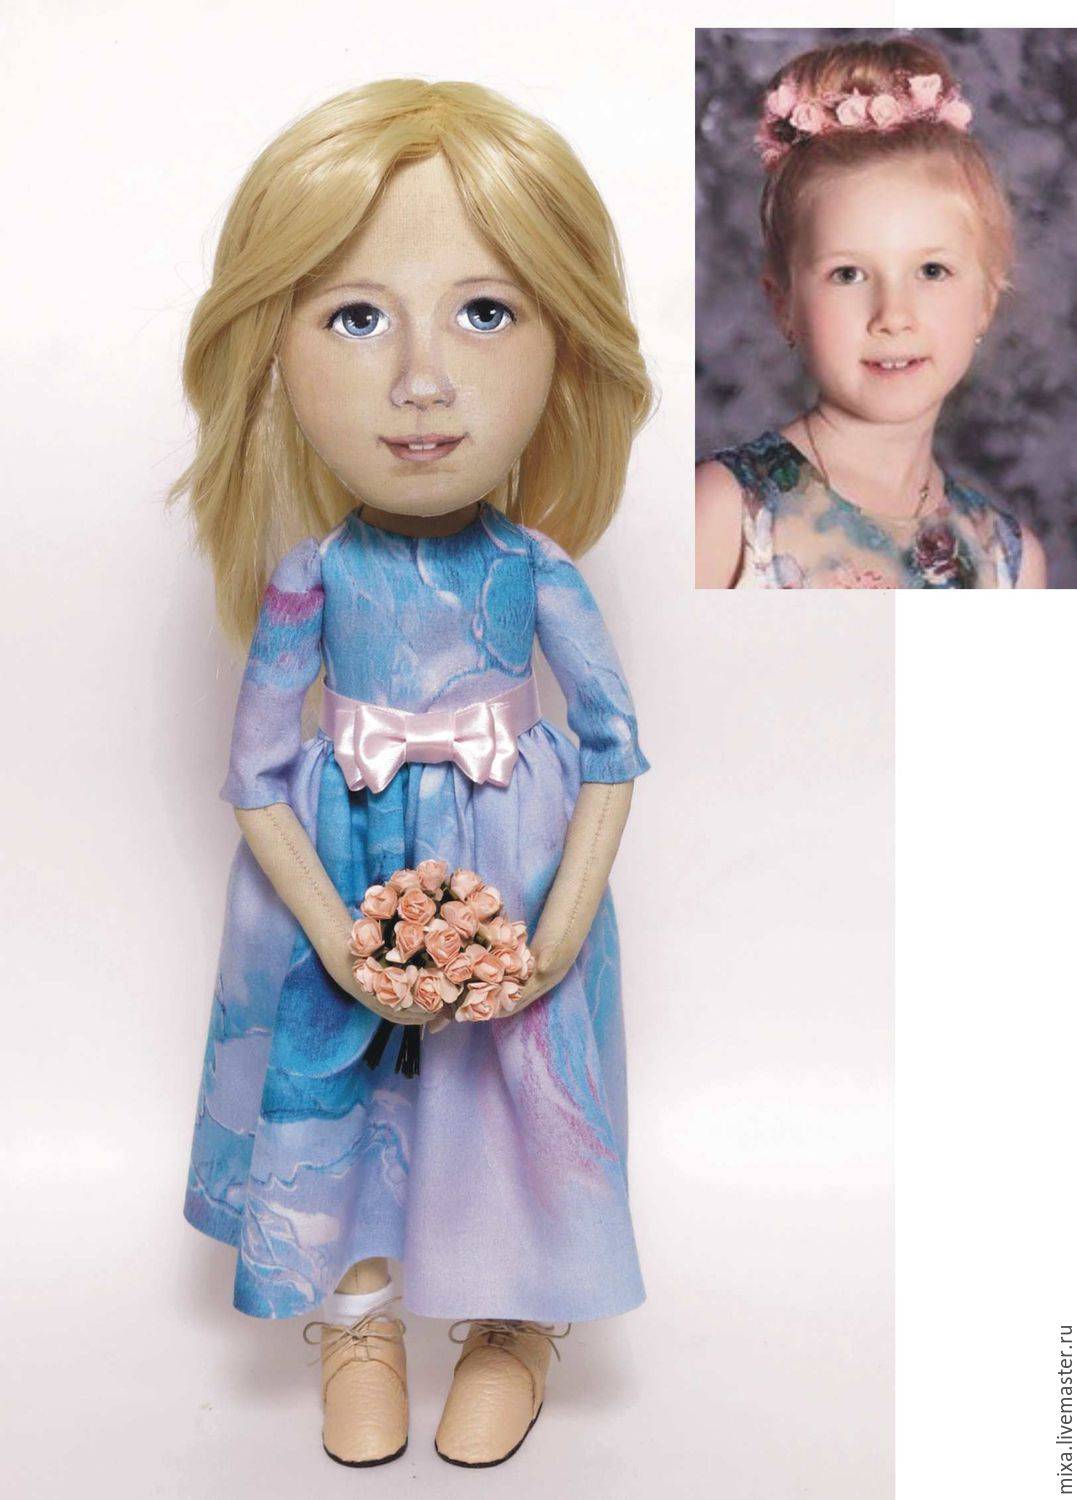 Авторские куклы, куклы ручной работы, куклы с портретным сходством